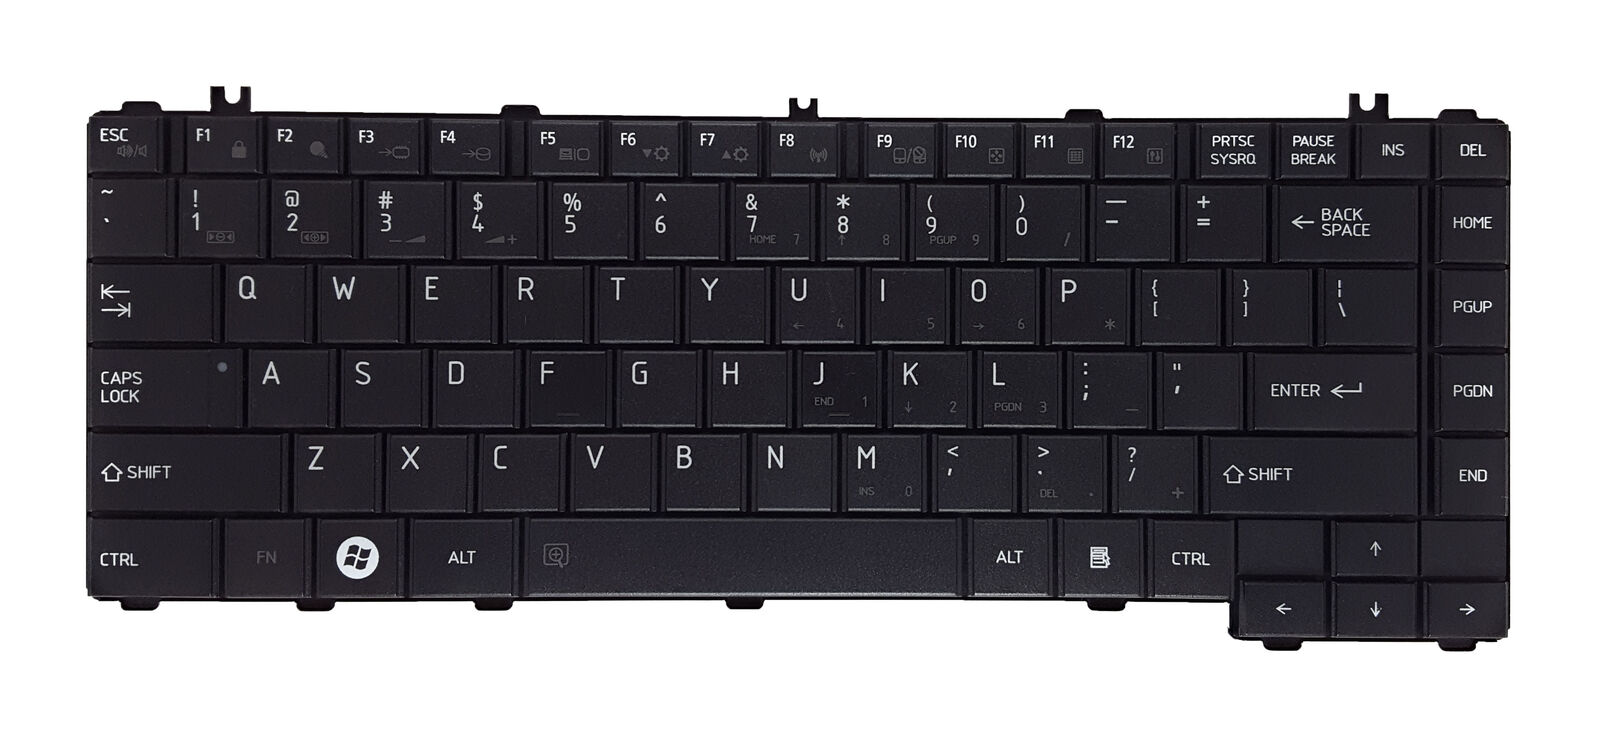 Keyboard For Toshiba Satellite L600 L645 L700 L740 L745 L745D L730 C600 C640